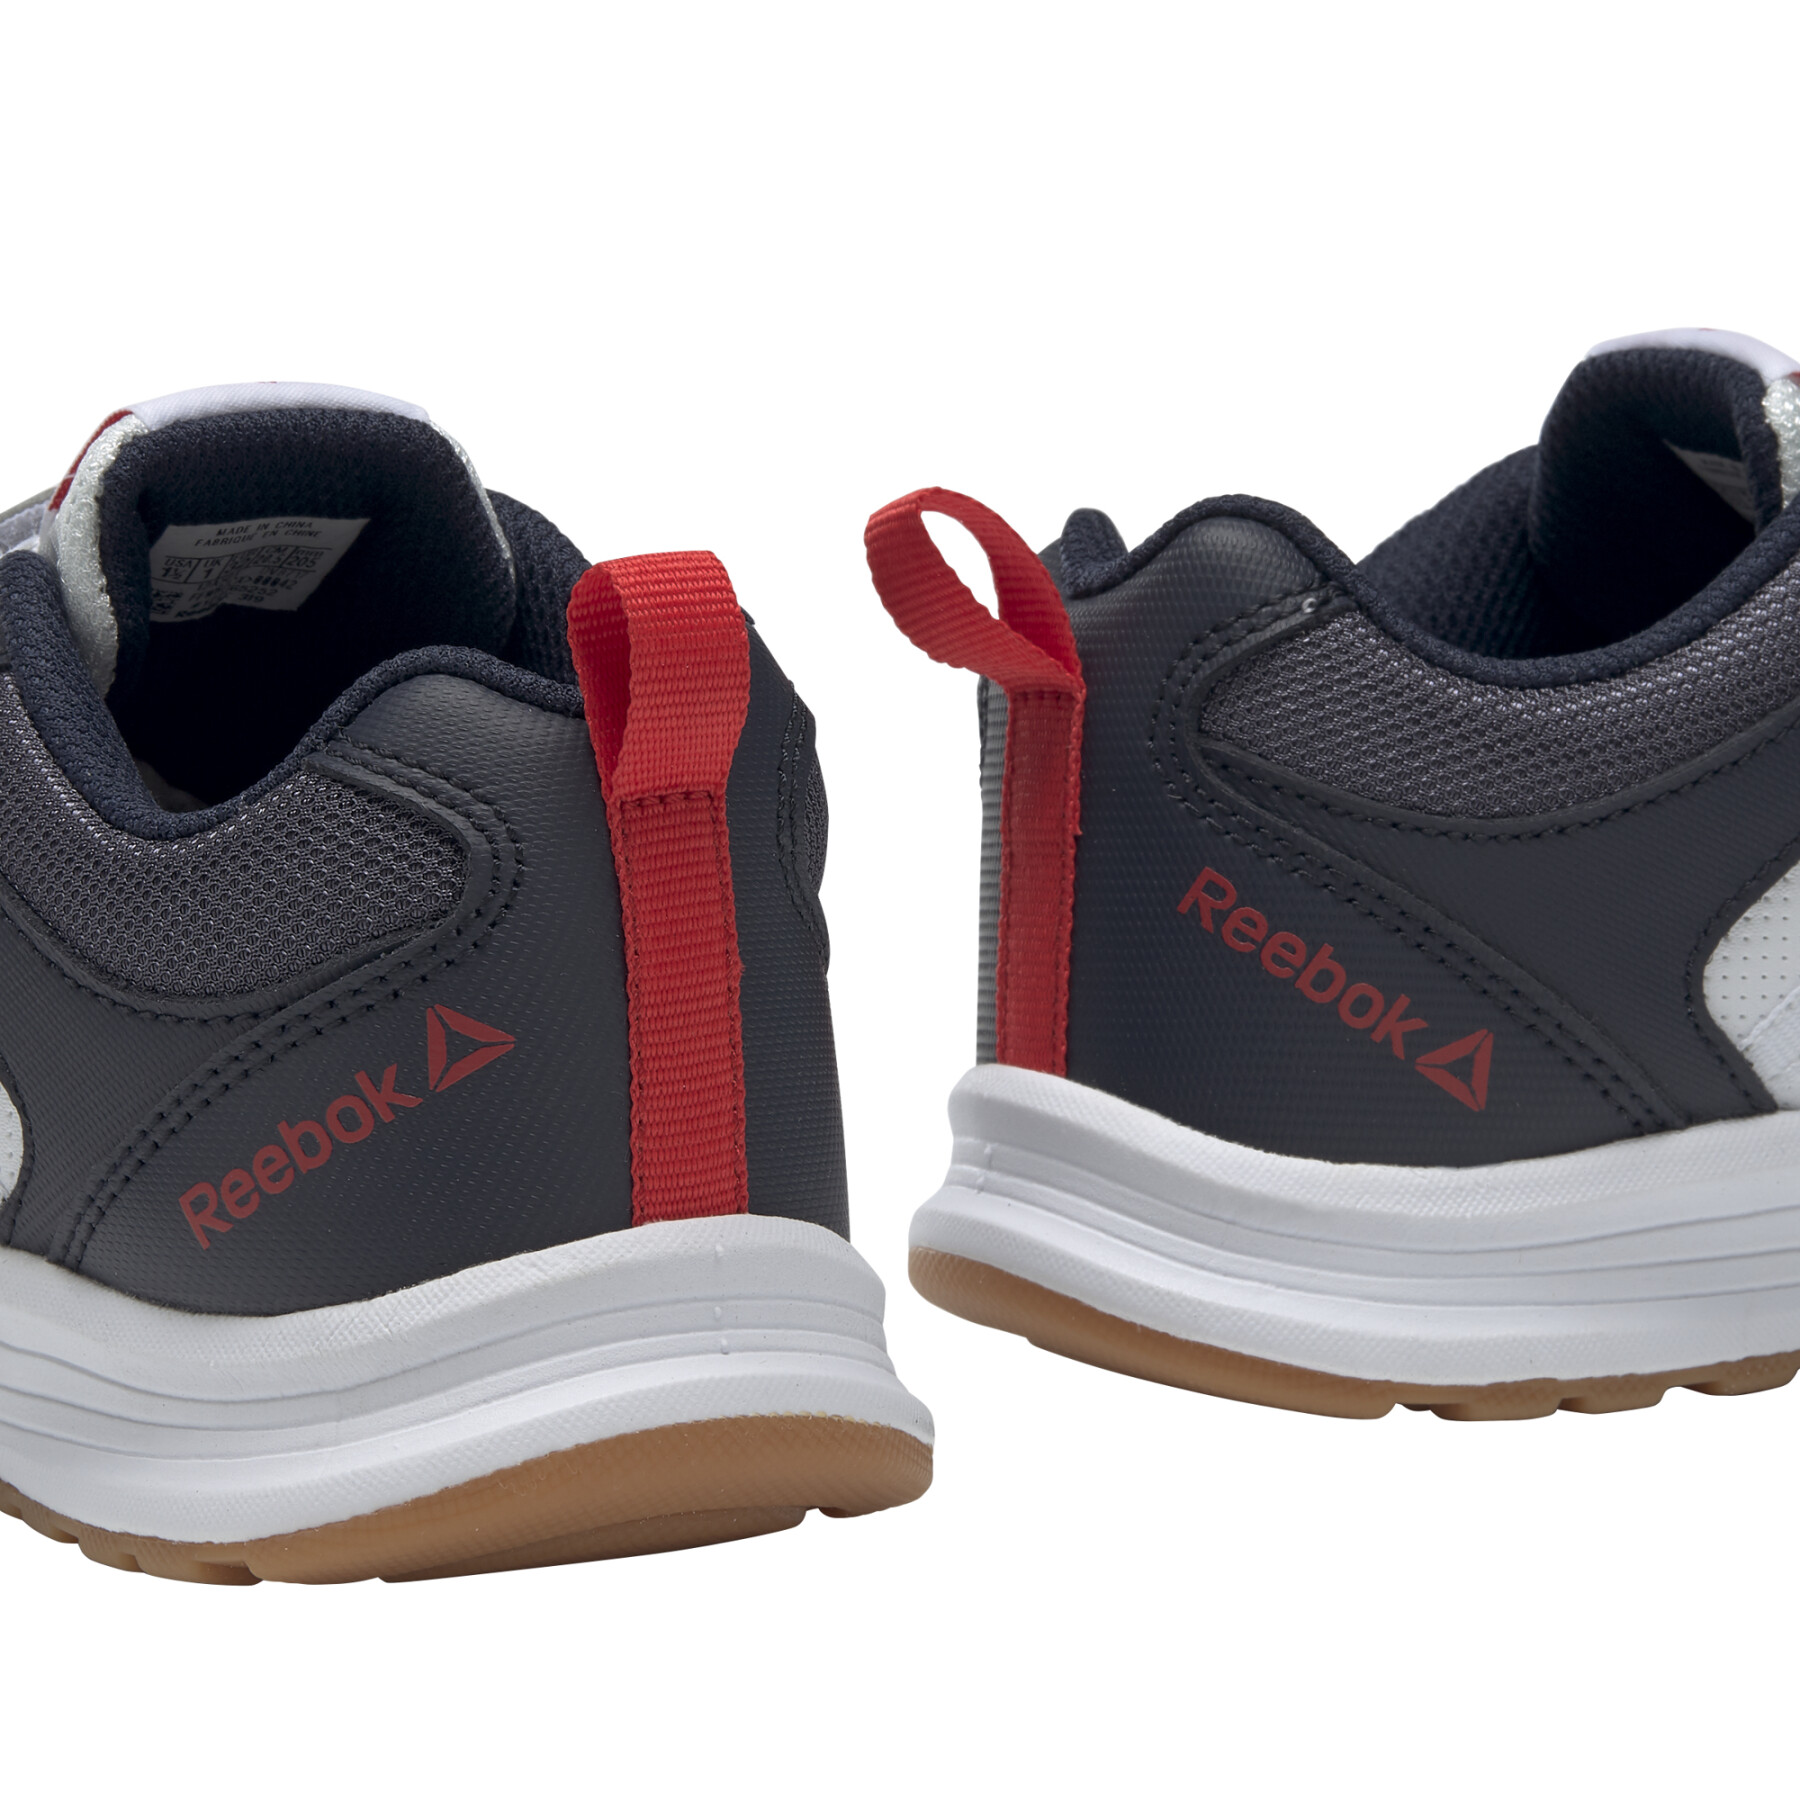 Zapatos para niños Reebok Almotio 4.0